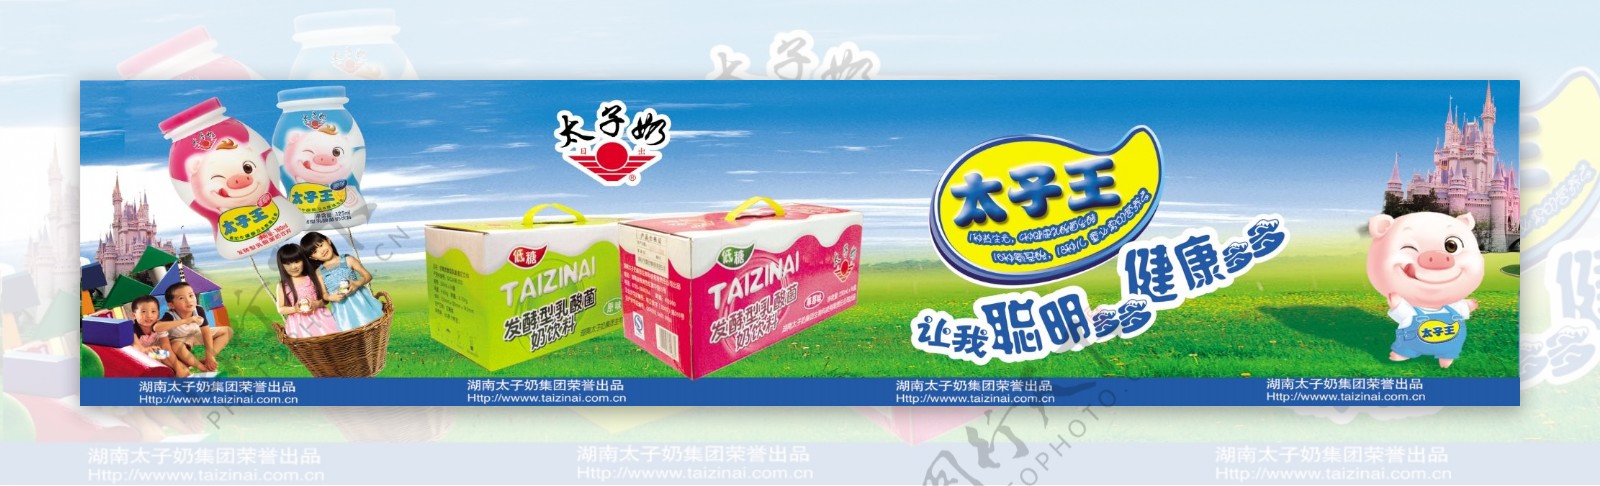 太子王奶品广告图片